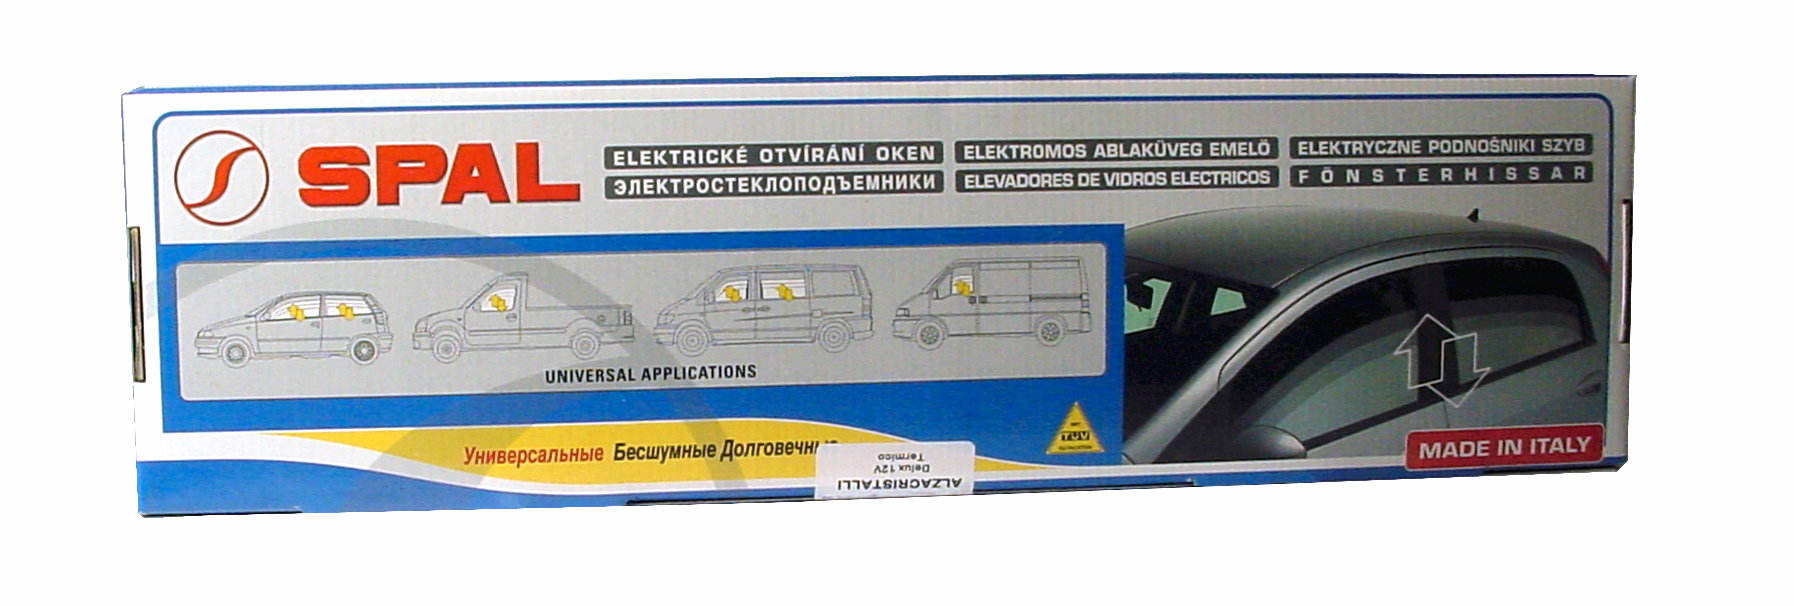 Fensterheber Universell mit Blende Typ 018.2.0 1 x Schalter für elektr